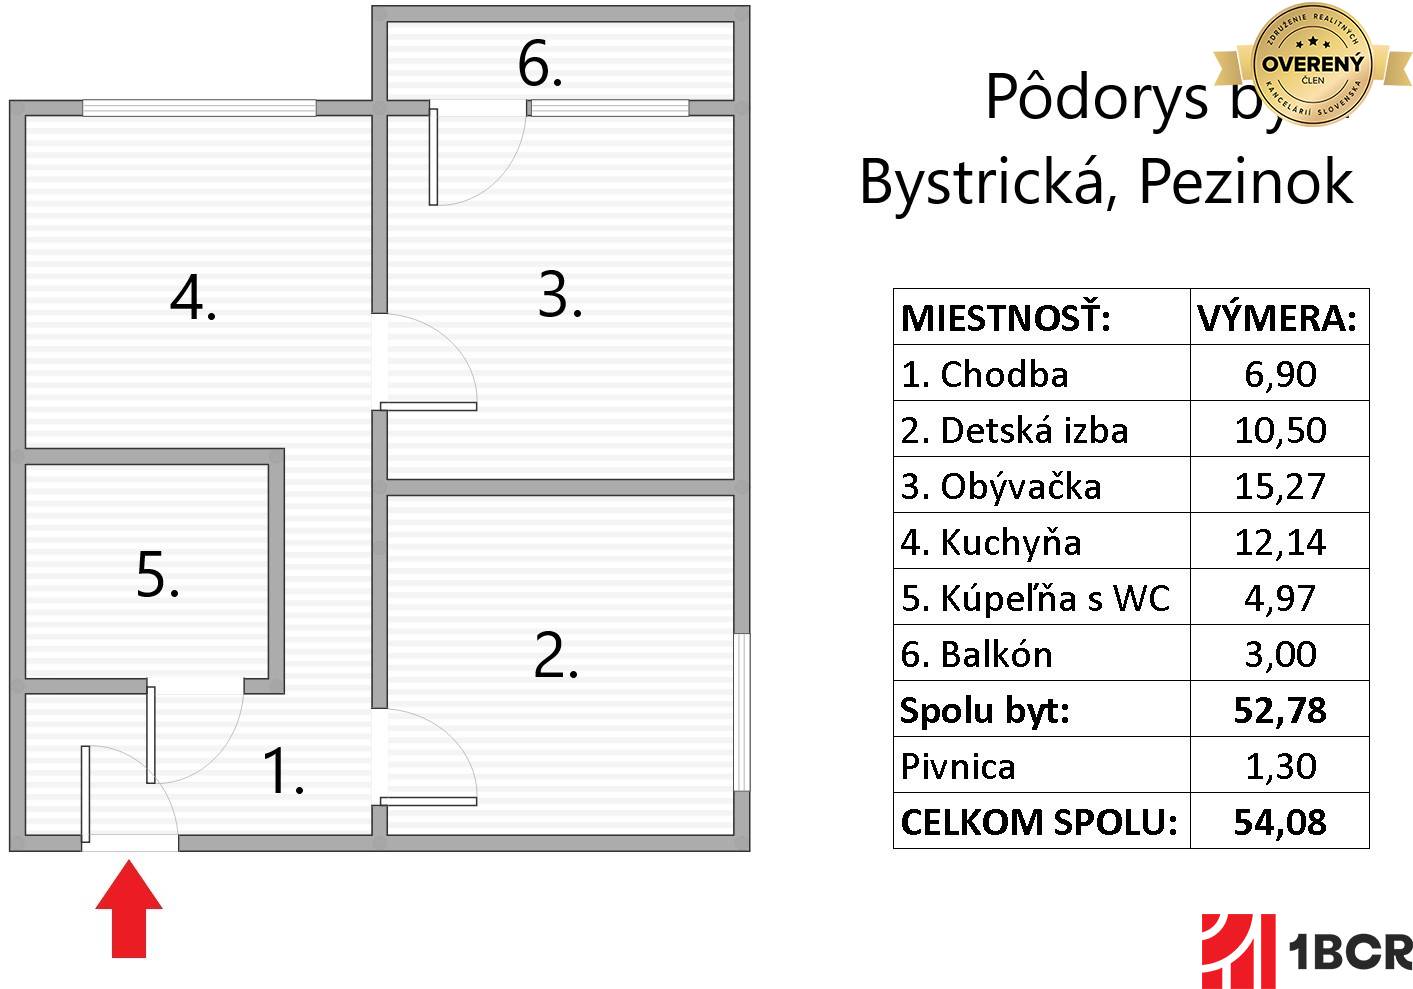 Pôdorys - Bystrická, Pezinok.jpg